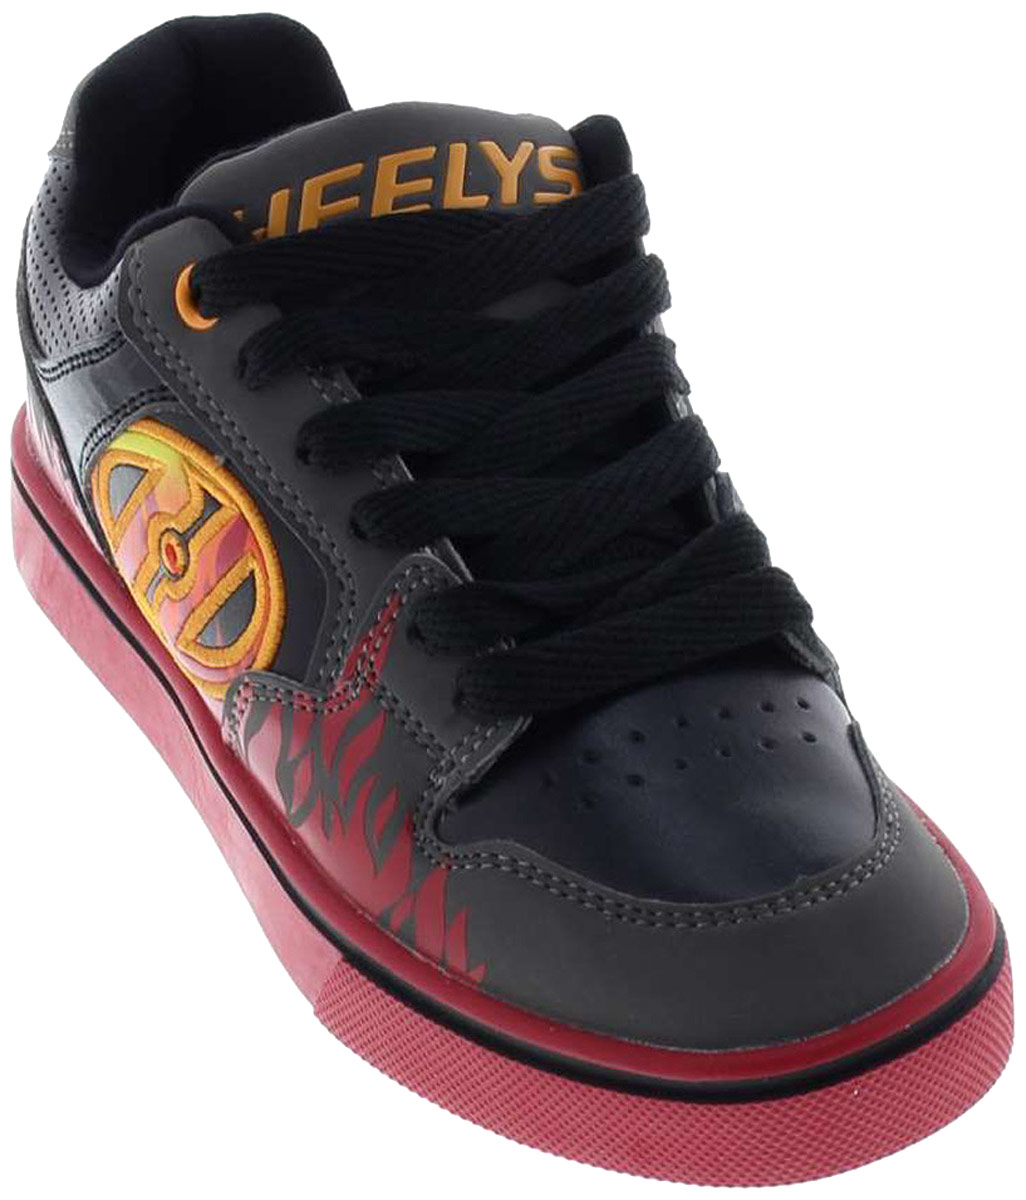 Кроссовки роликовые для мальчика Heelys Motion Plus, цвет: серый, красный. 770815. Размер 1 (31)